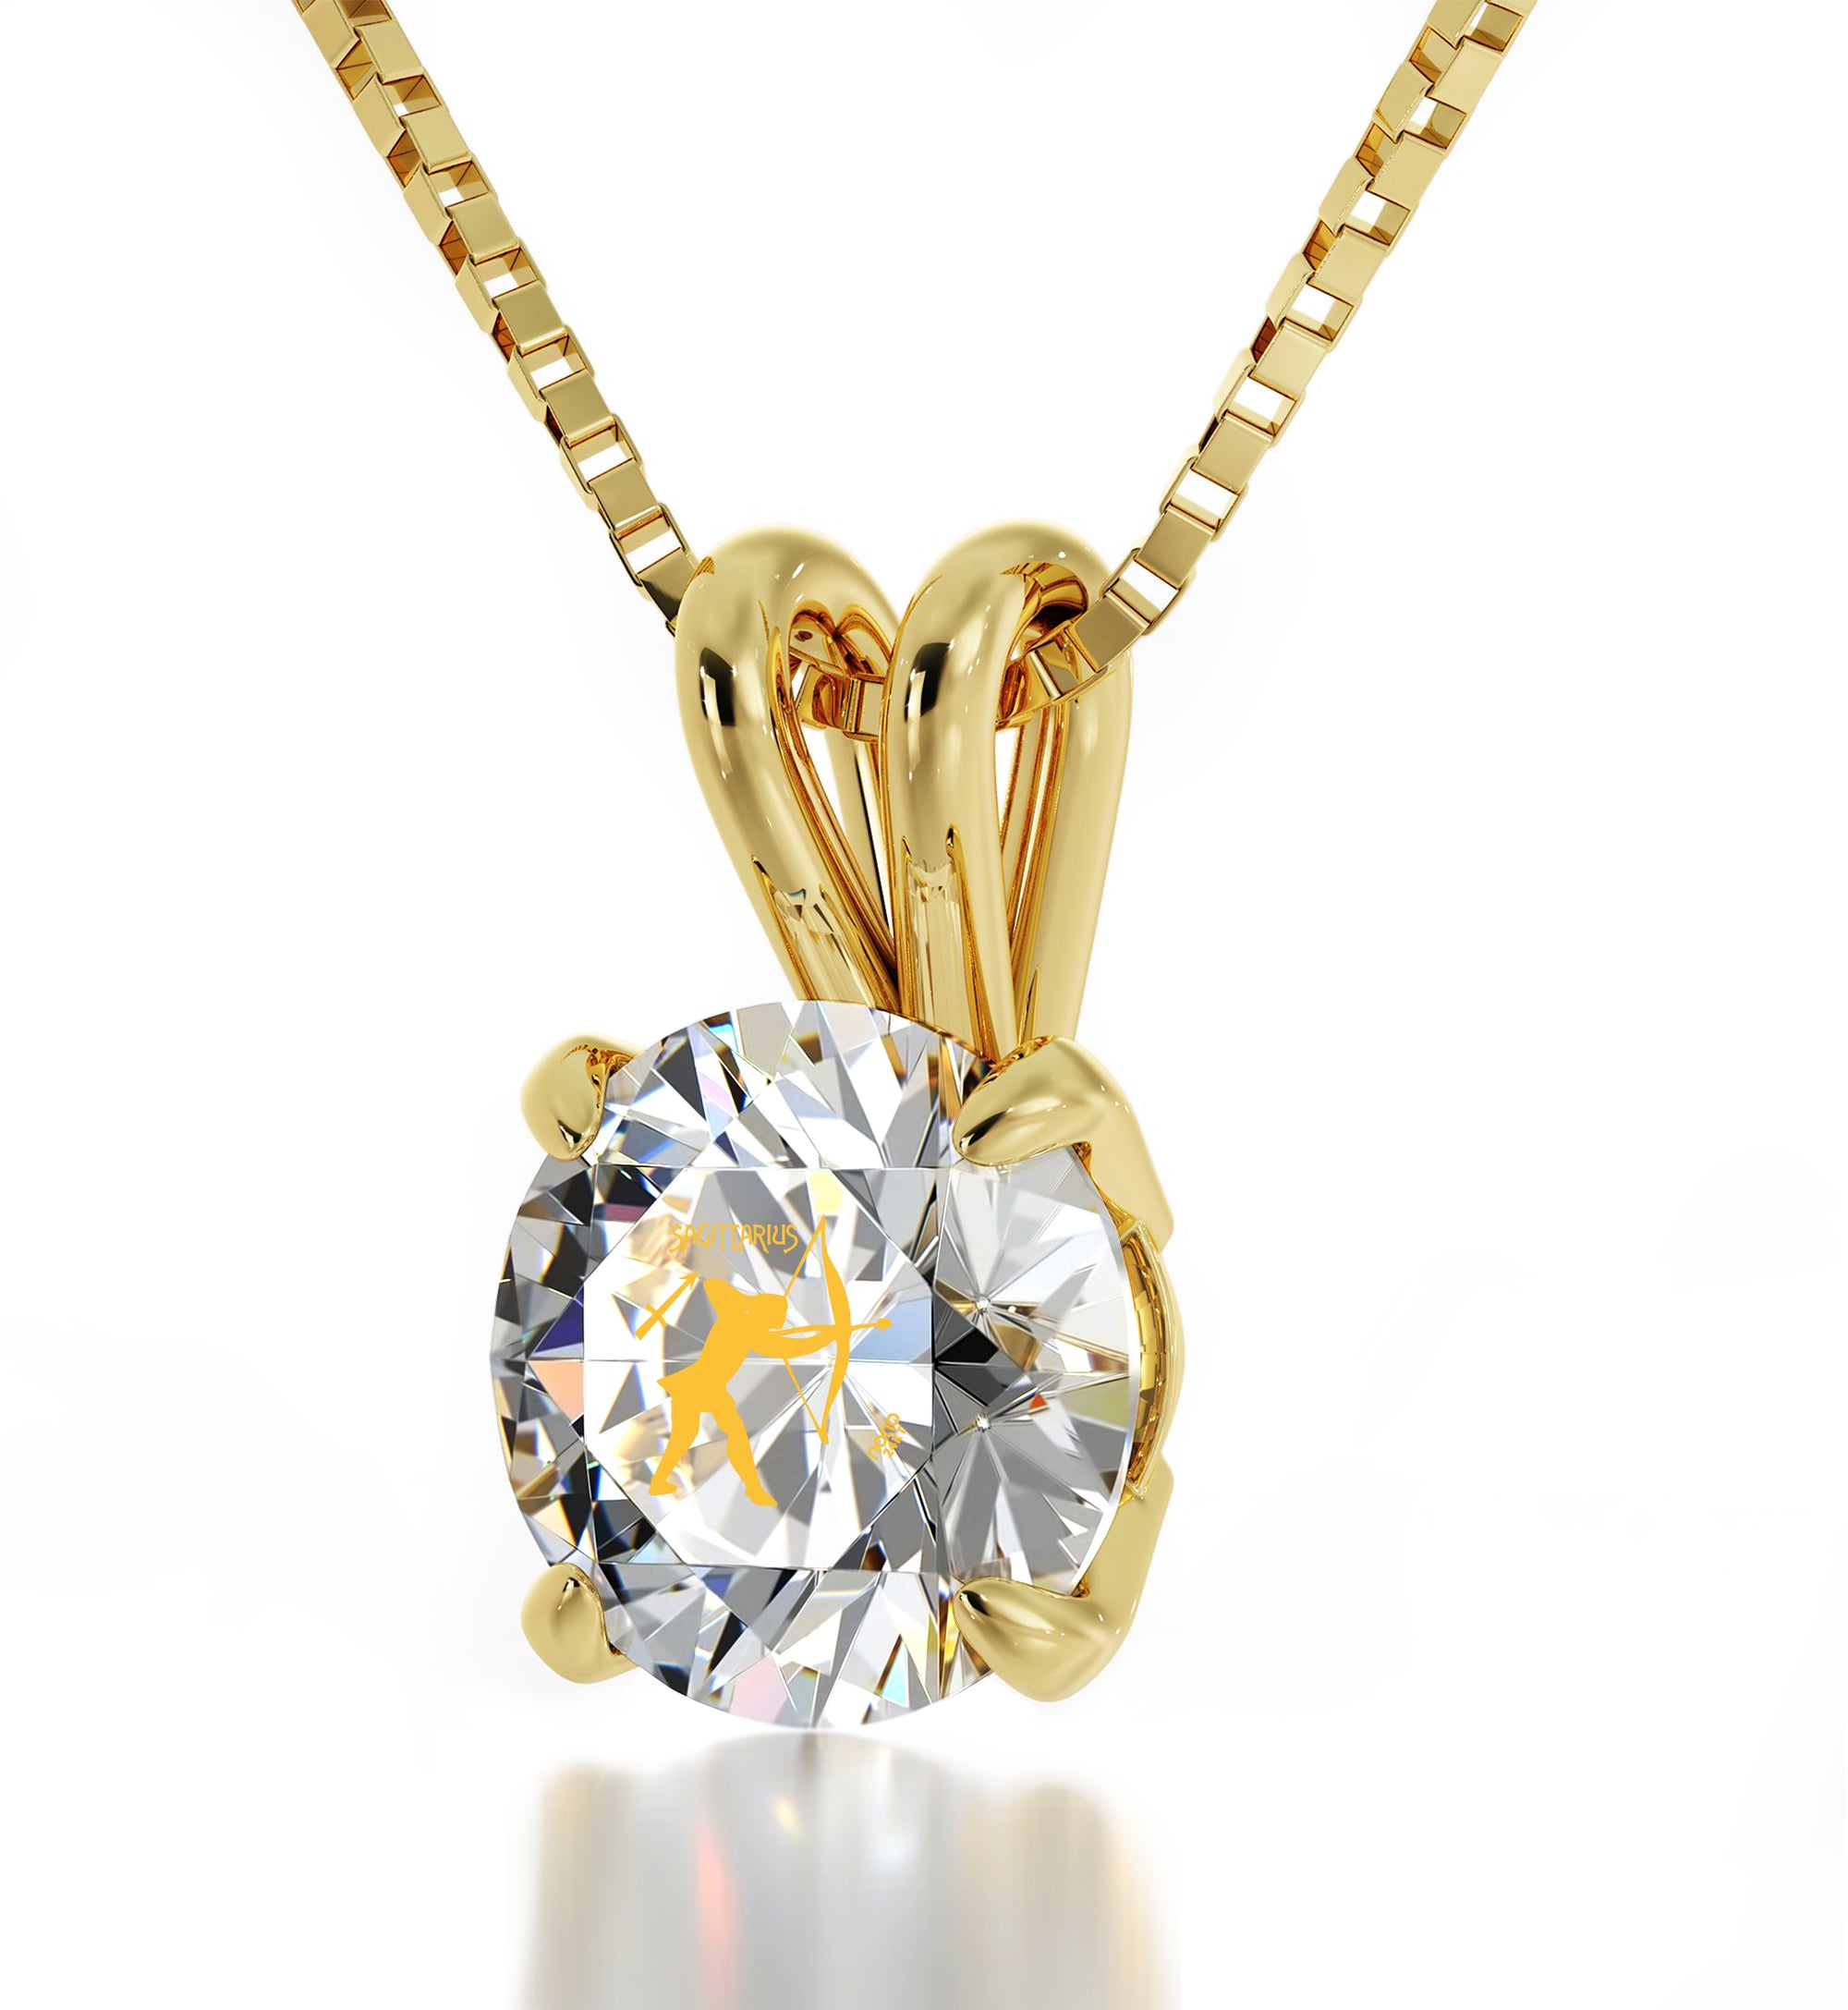 Zodiac Jewelry for Women | 24k gold inscribed Sagittarius Necklace -  NanoStyle Jewelry